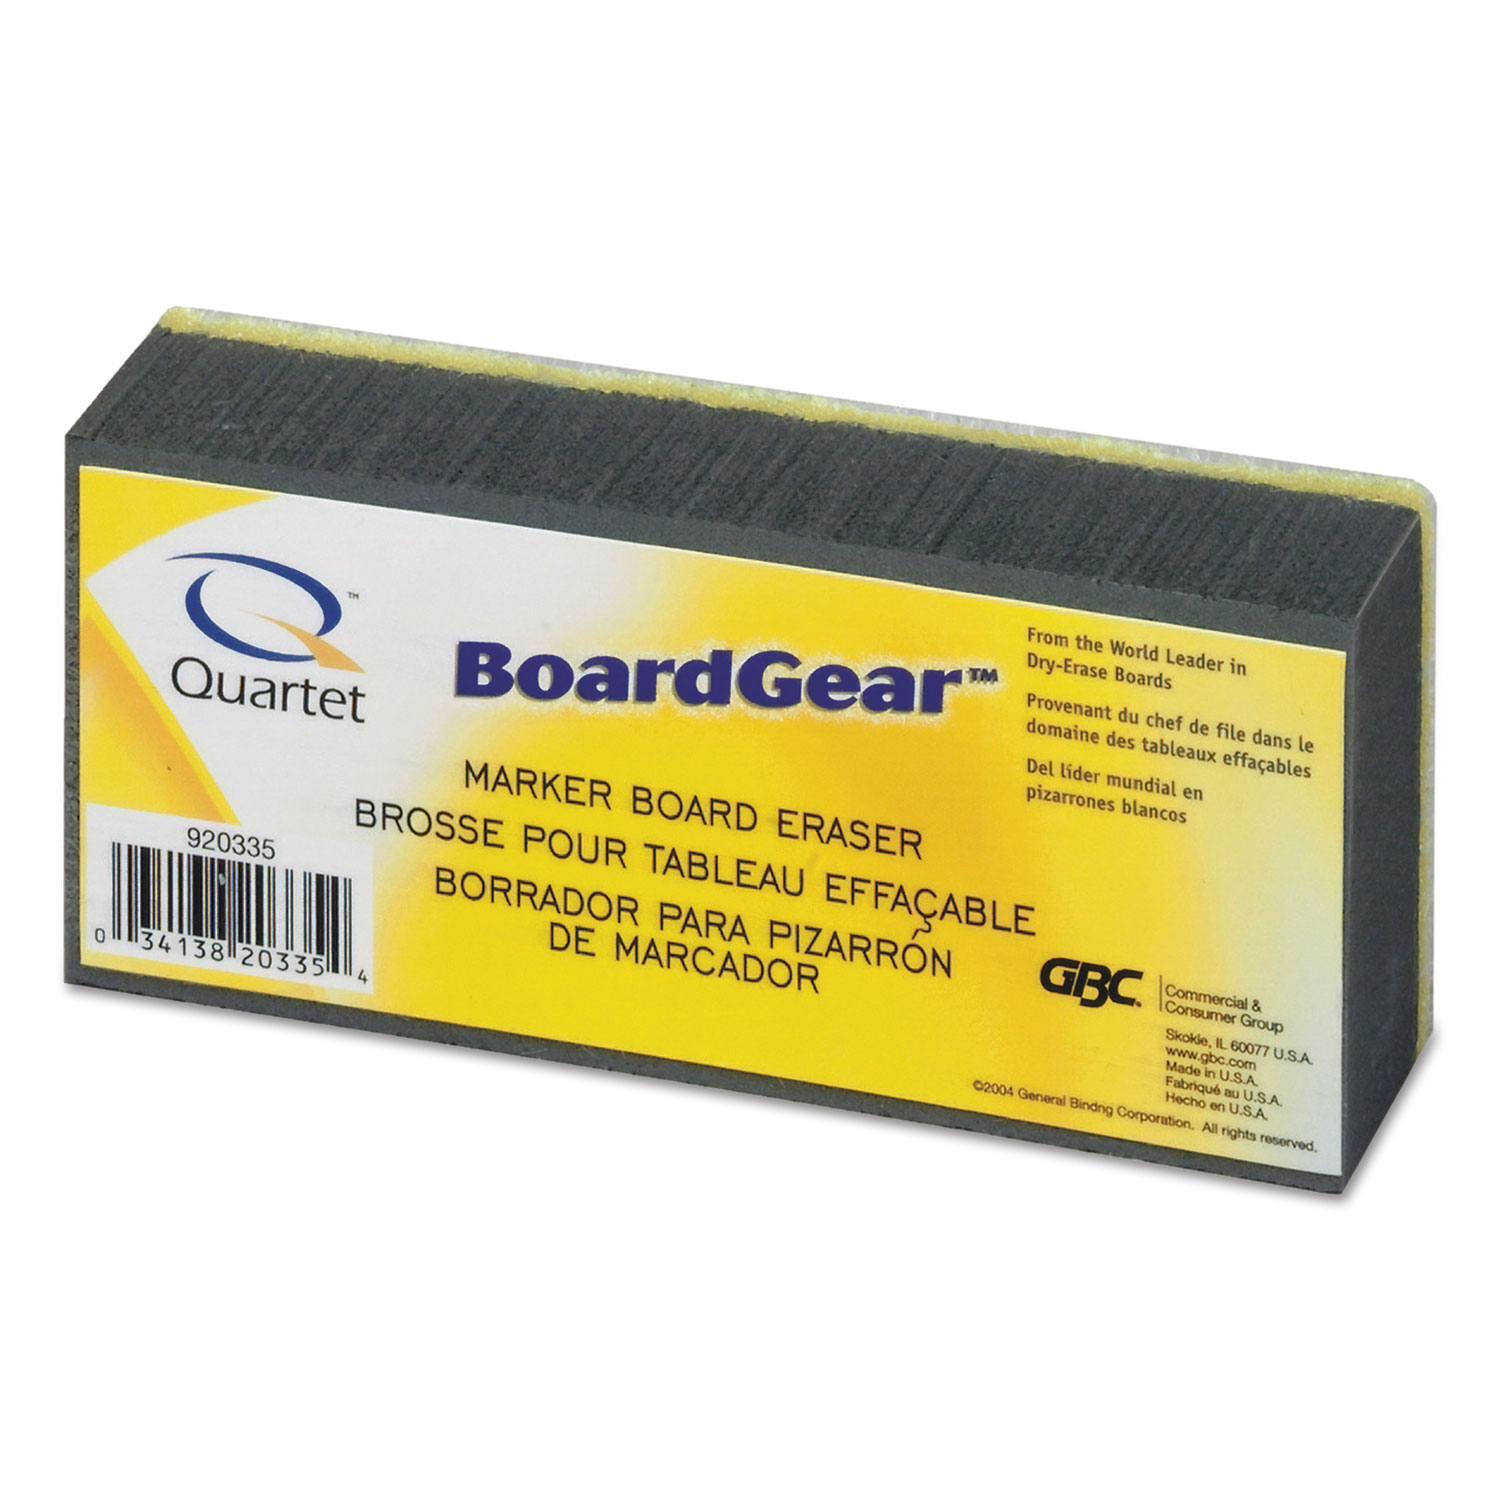  Quartet 920335 BoardGear Marker Board Eraser, 5 x 2.75 x 1.38 (QRT920335) 